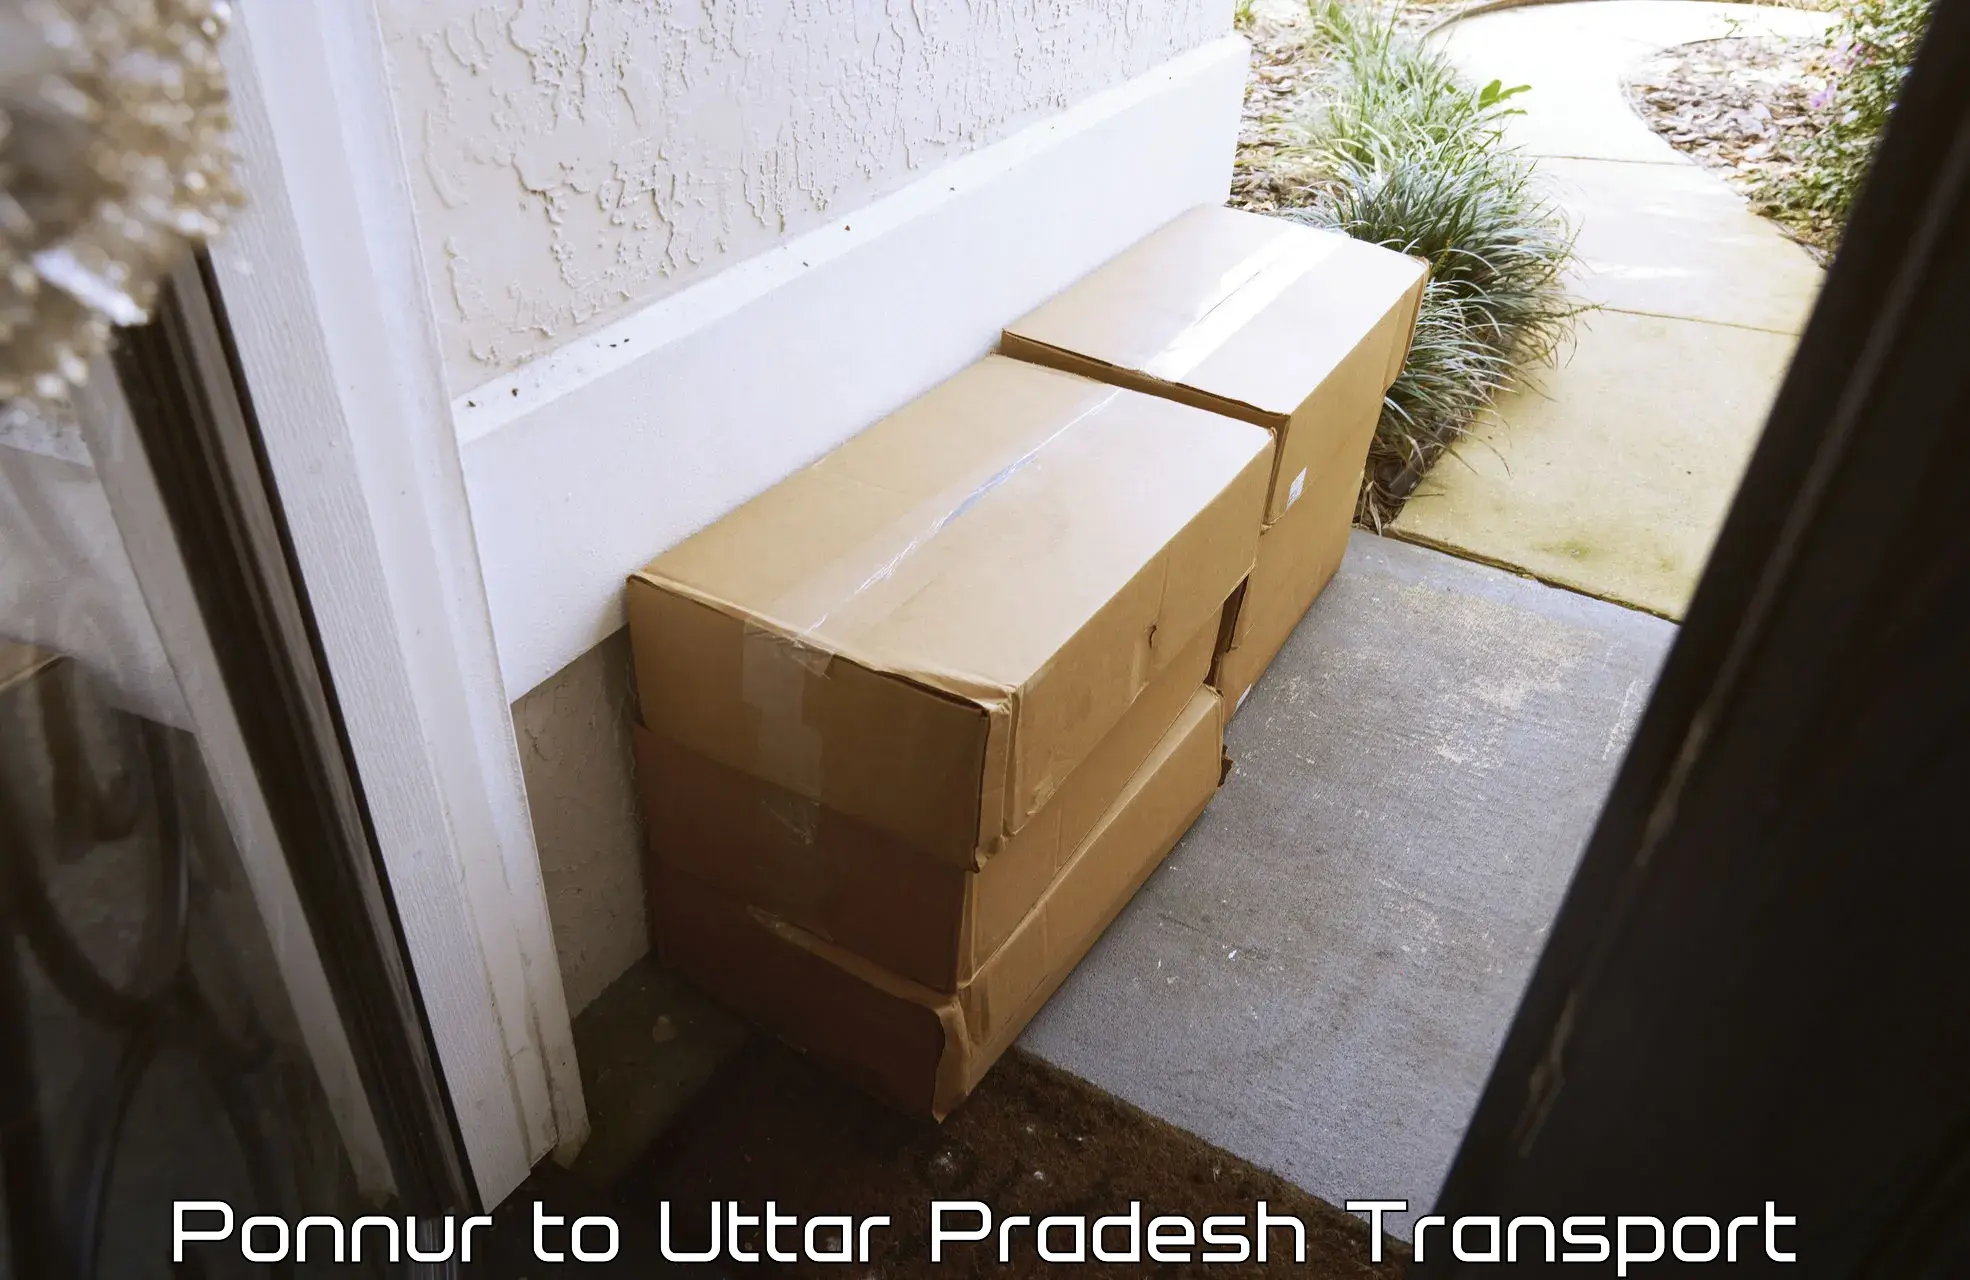 Daily parcel service transport Ponnur to Gauri Bazar